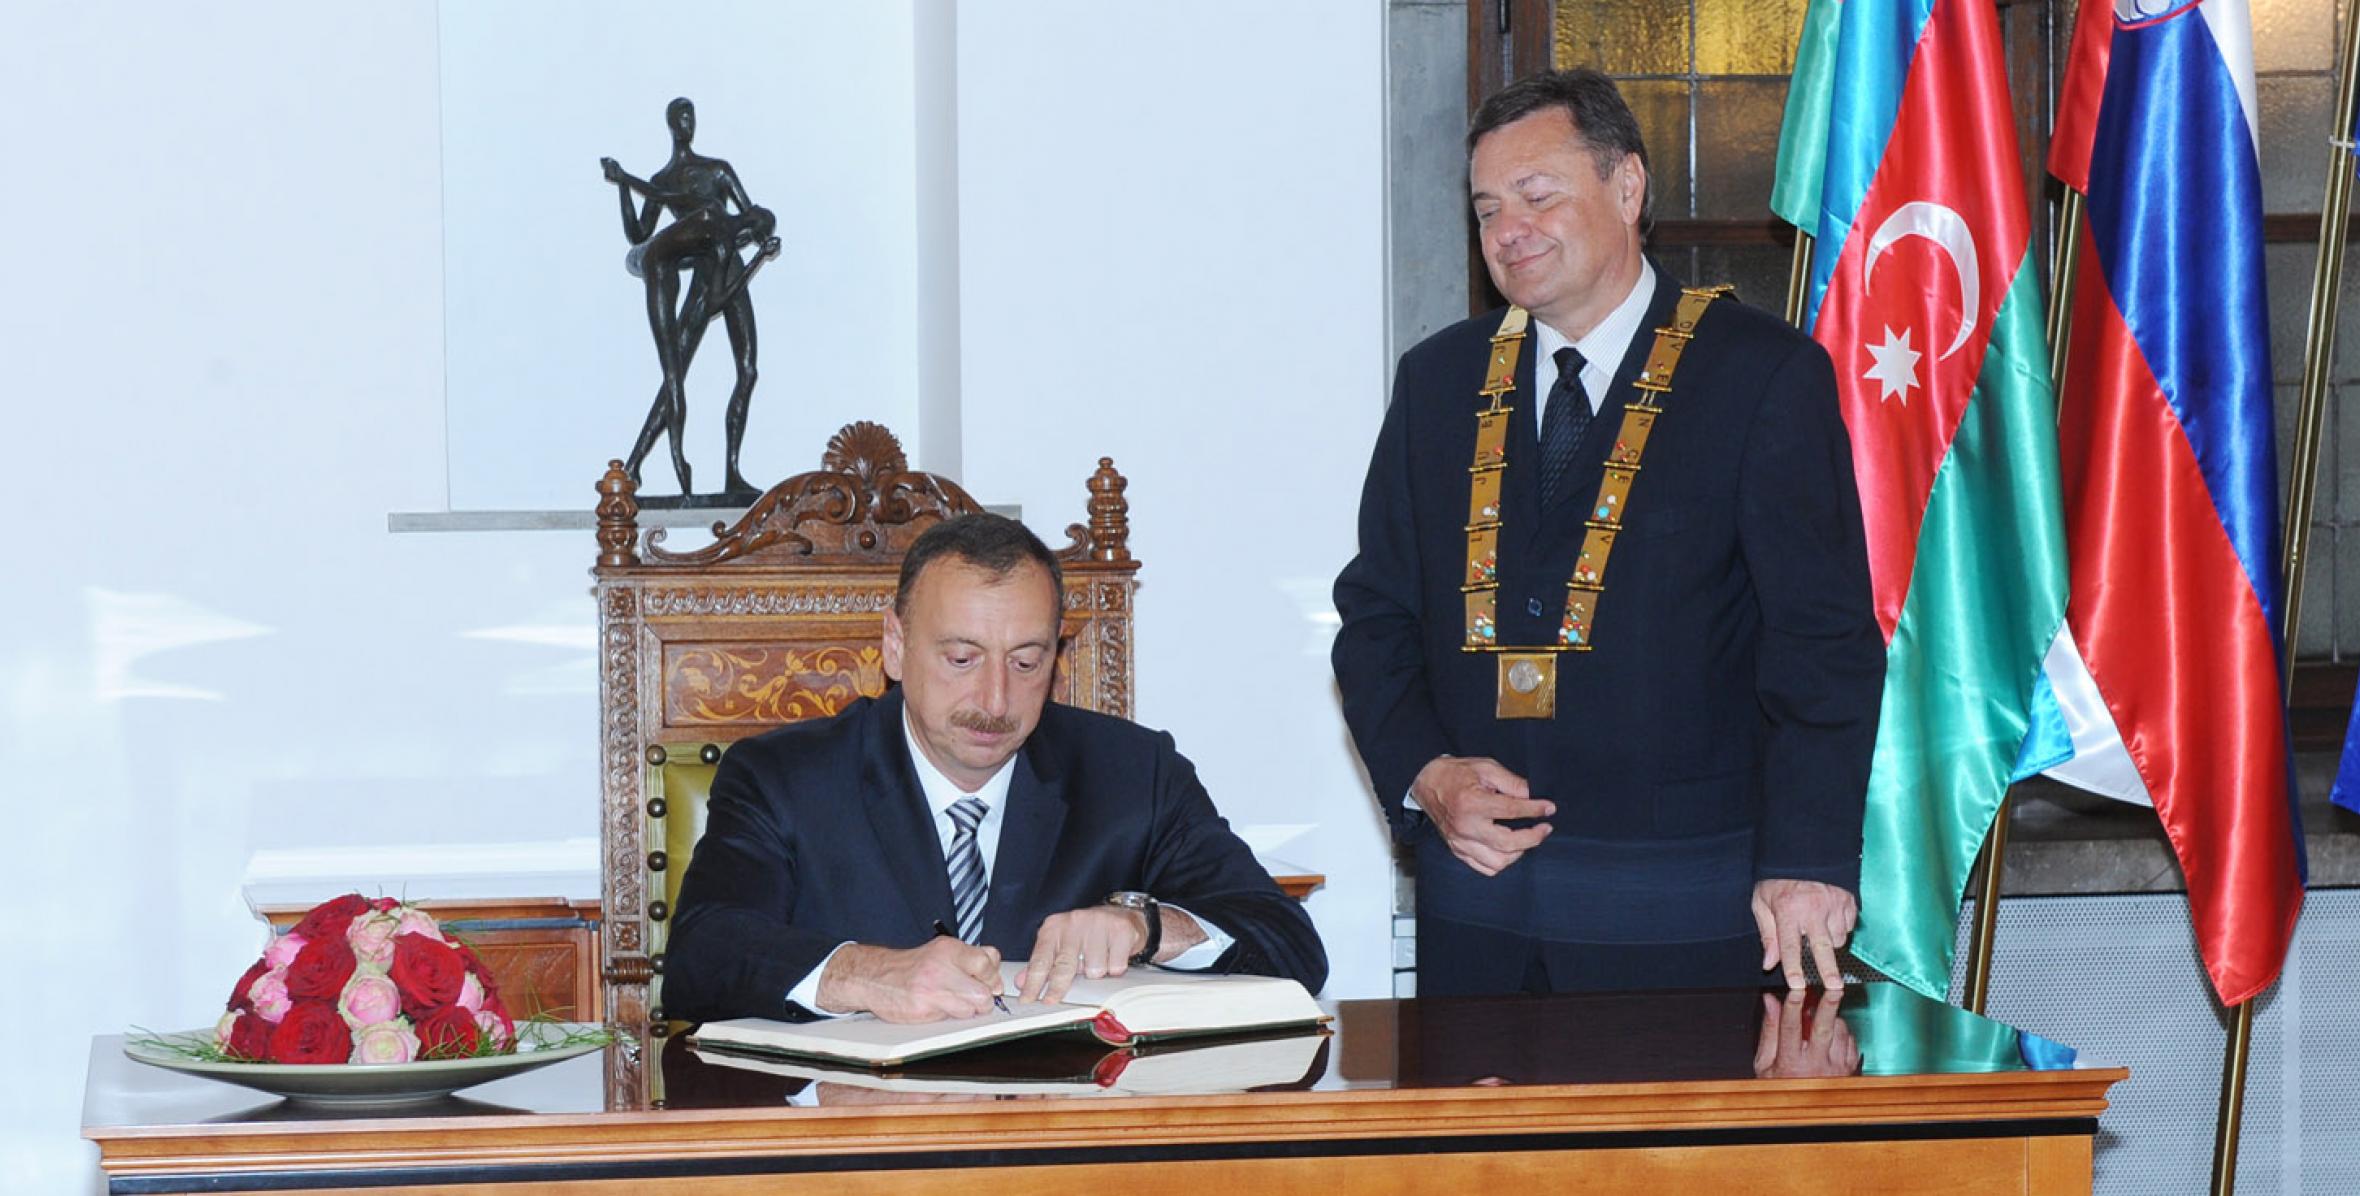 Ilham Aliyev visited the Ljubljana Mayor’s Office